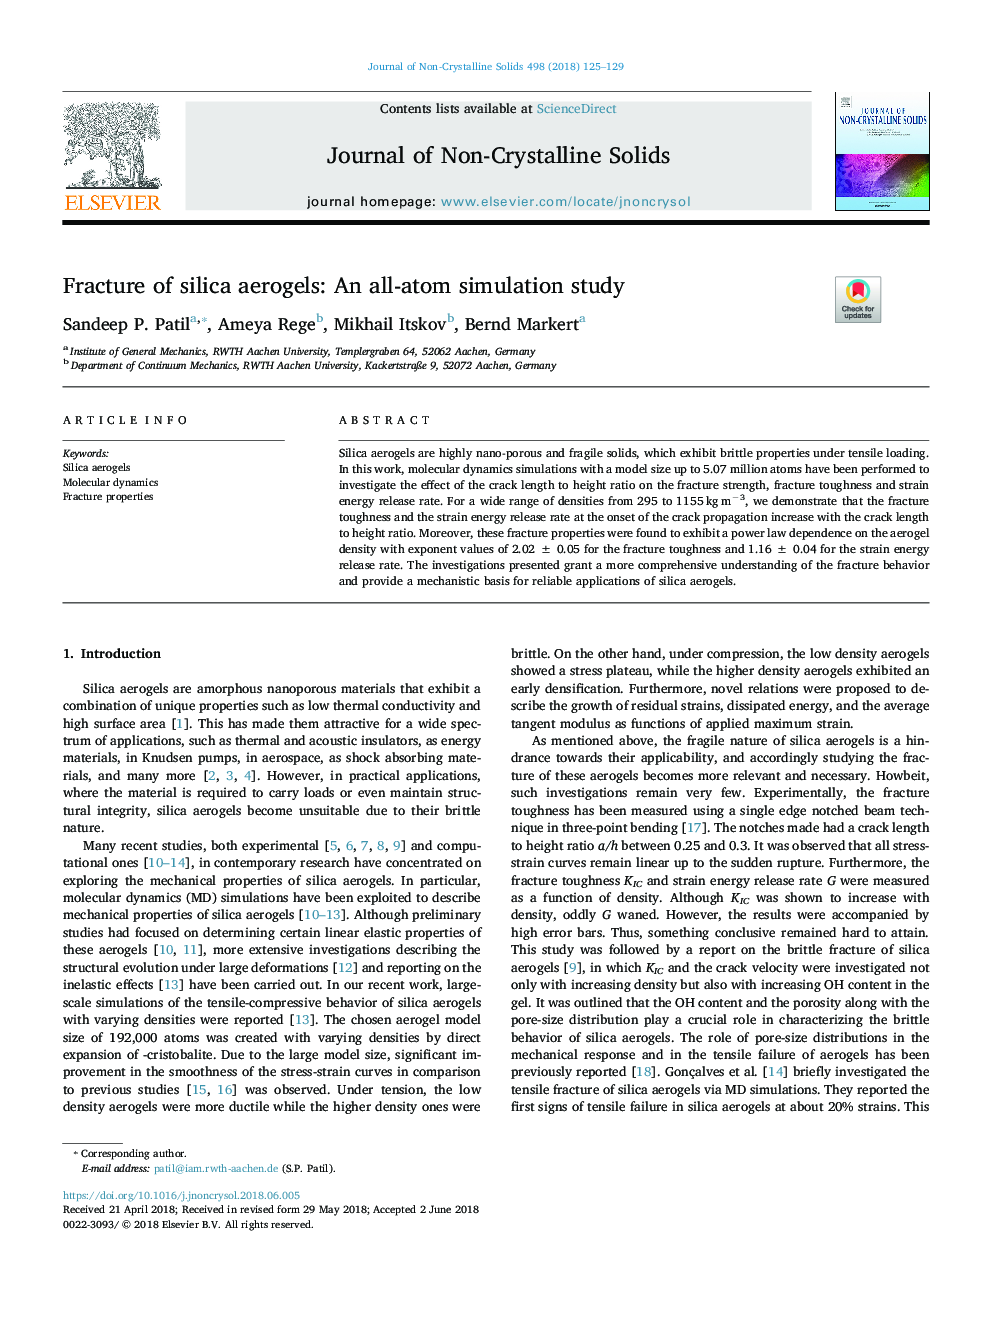 شکستگی های آلیاژل سیلیکا: یک مطالعه شبیه سازی اتمسفر 